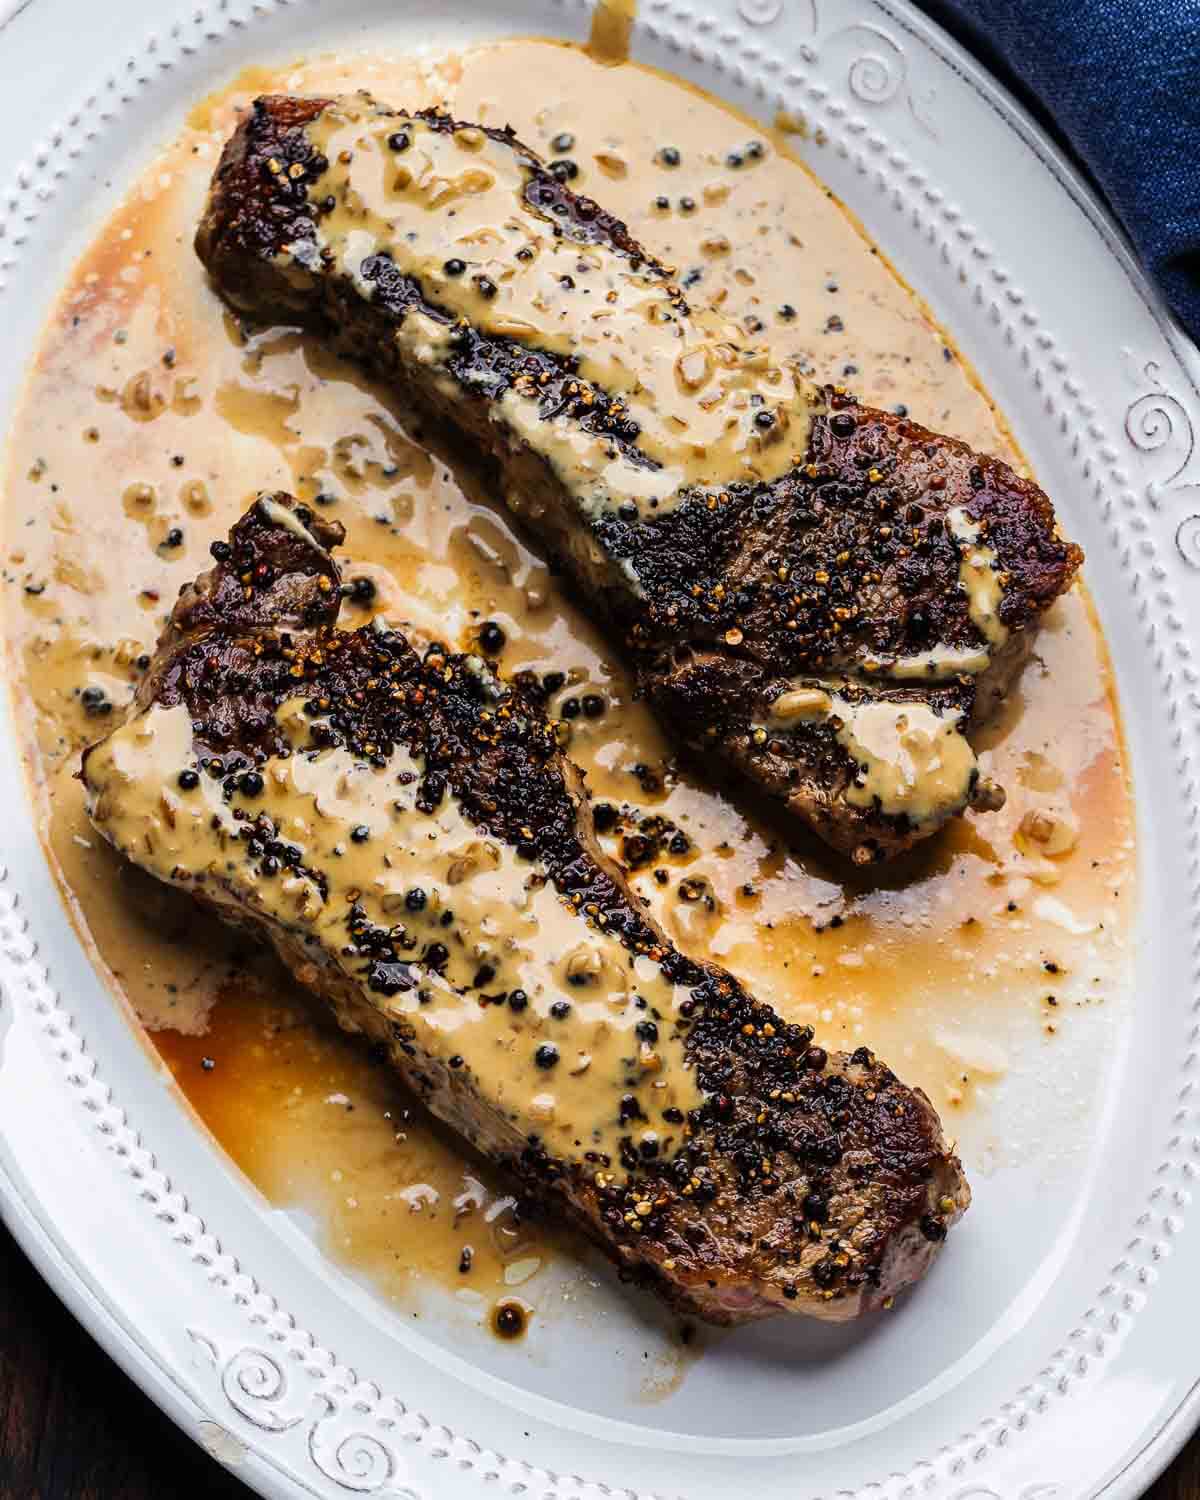 Steak au poivre in white platter with blue napkin.